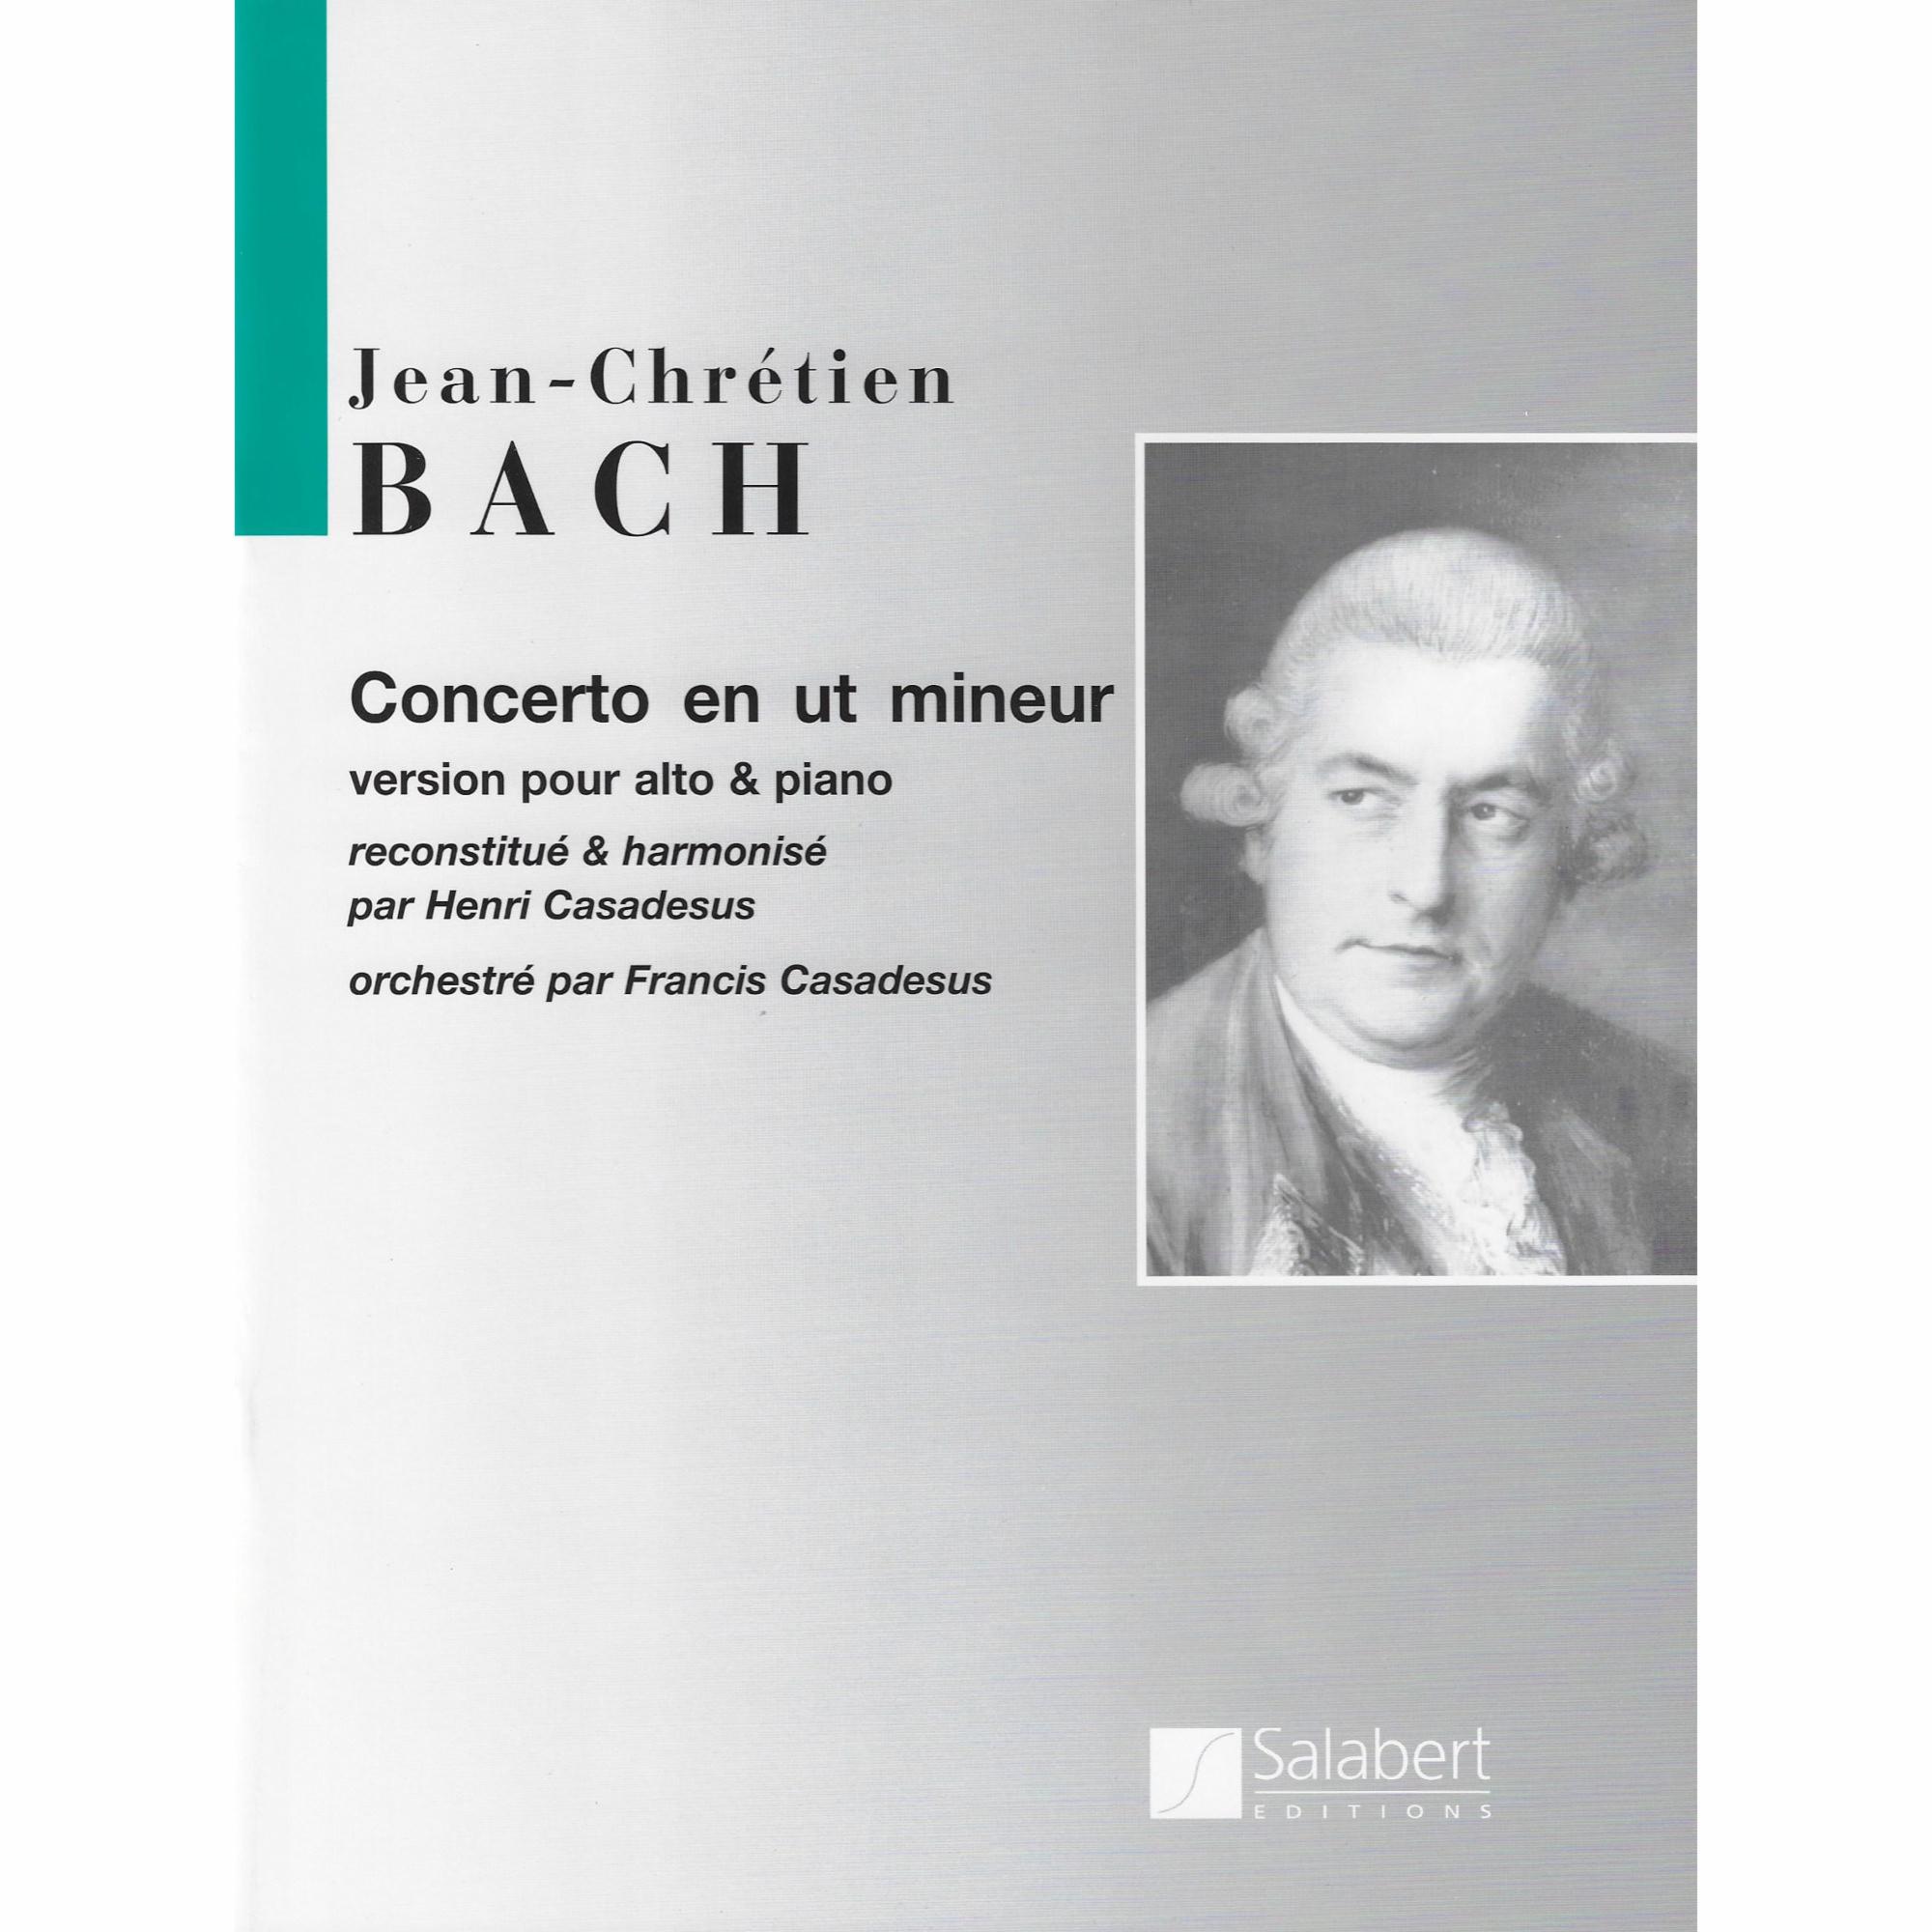 Viola Concerto in C Minor